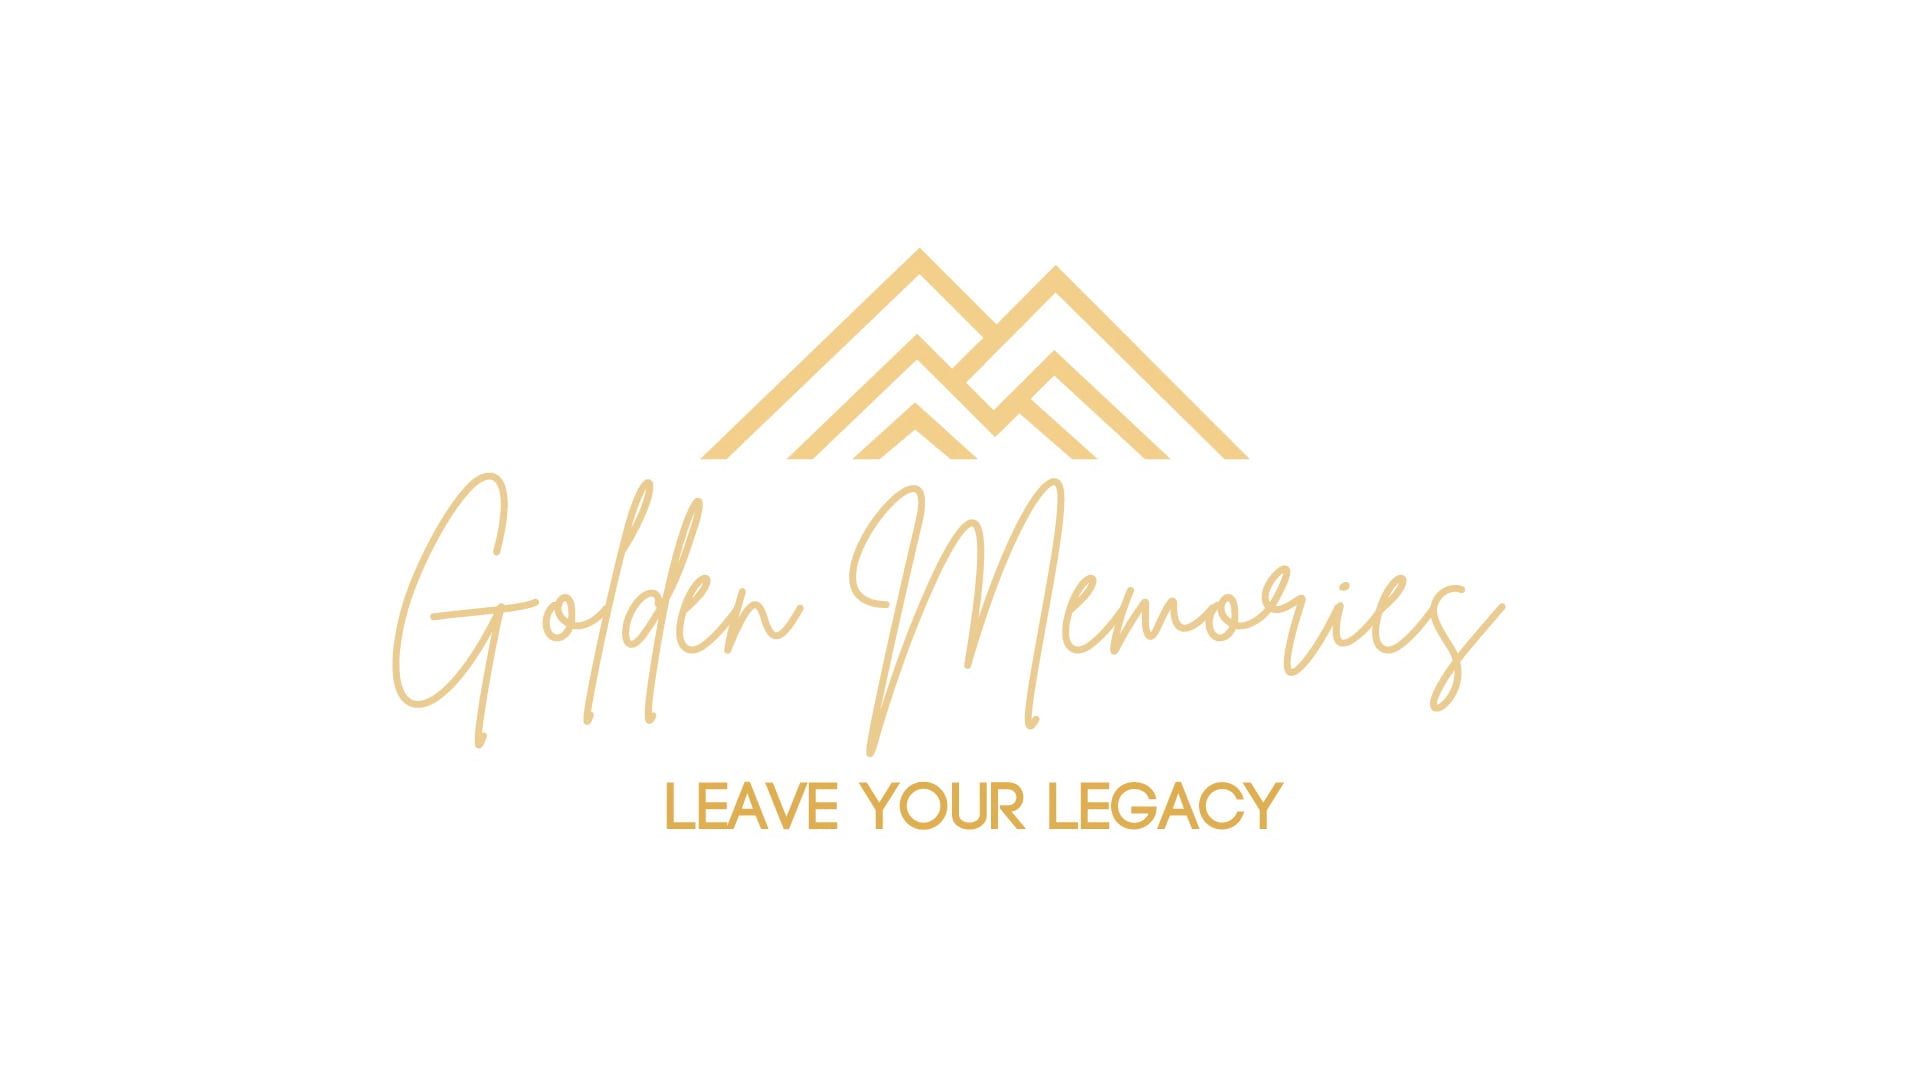 Introducing Golden Memories